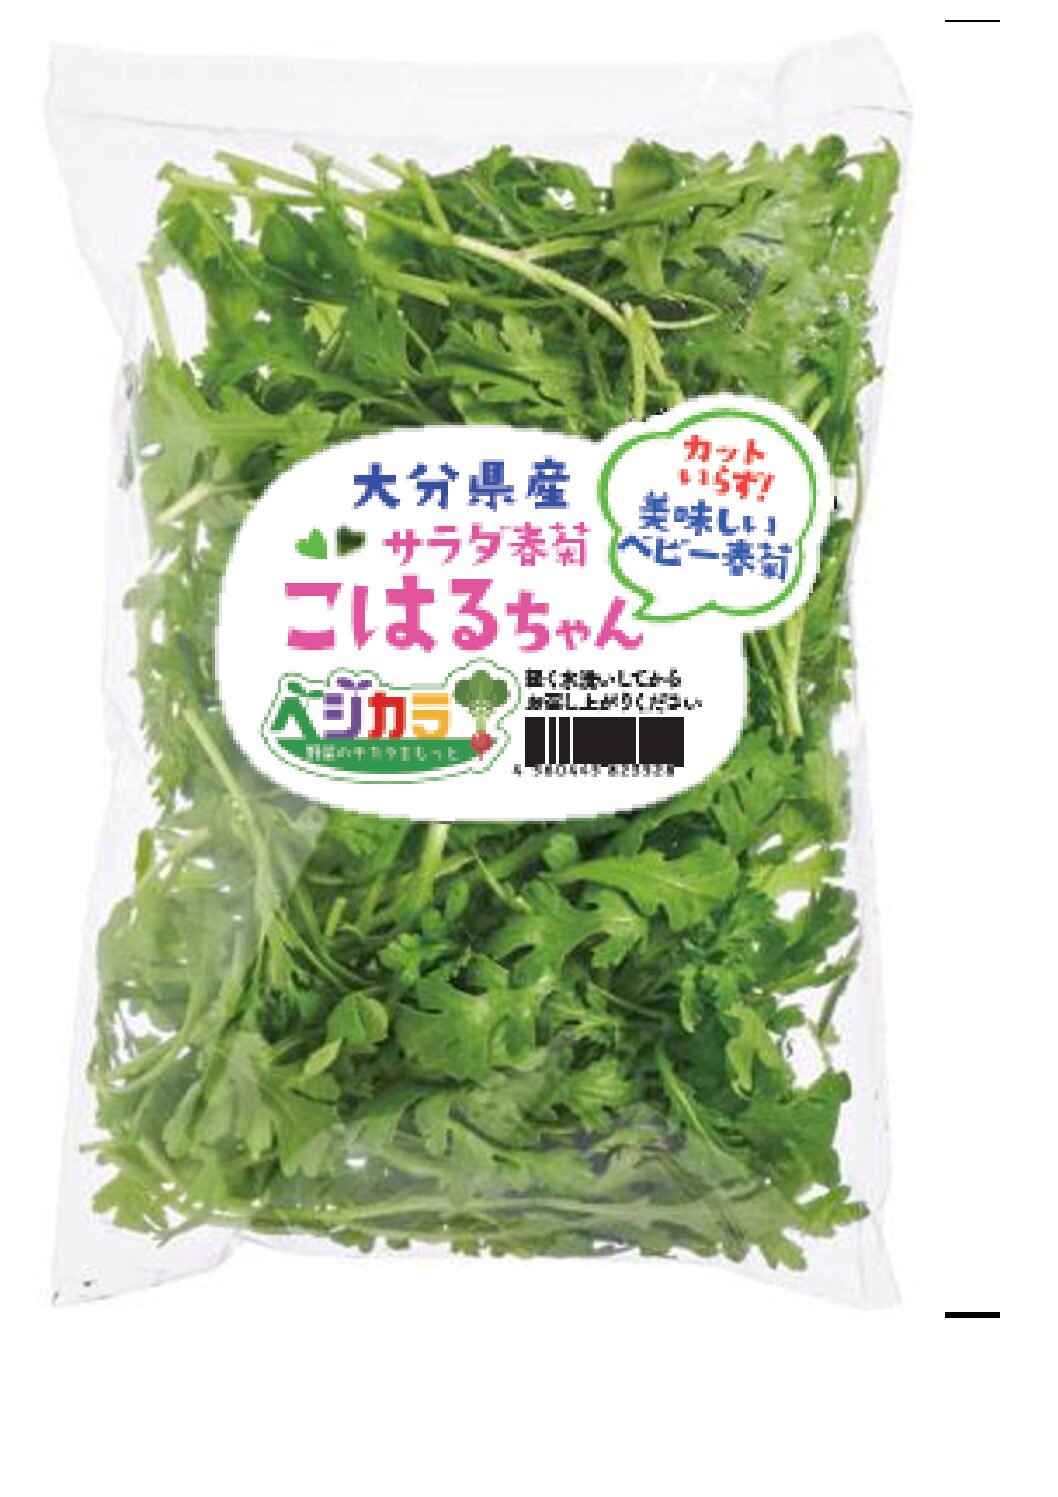 新発売「サラダ春菊こはるちゃん」 | 九州シジシー KYUSHU CGC